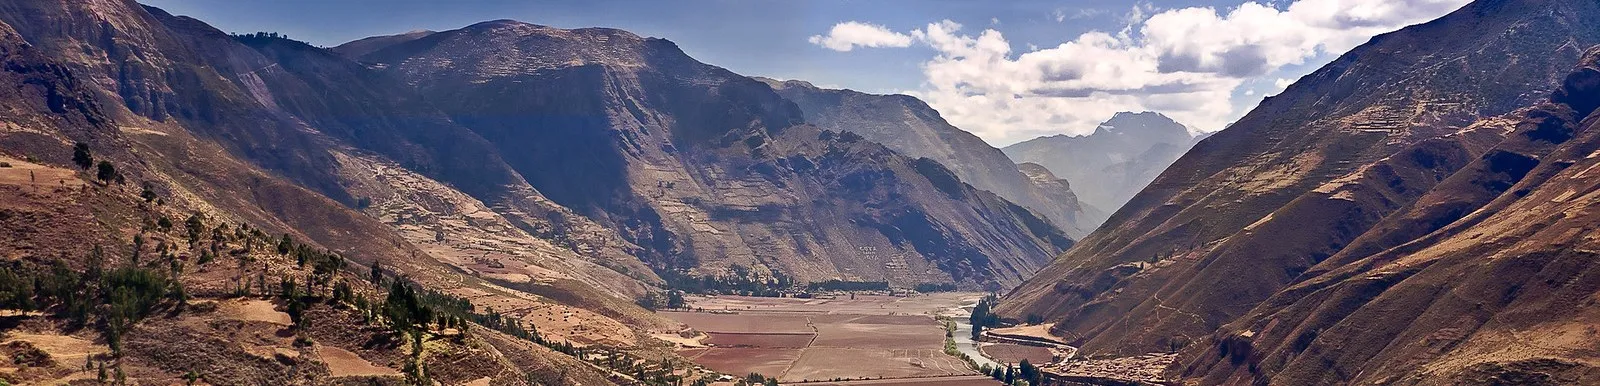 Peru Banner Image